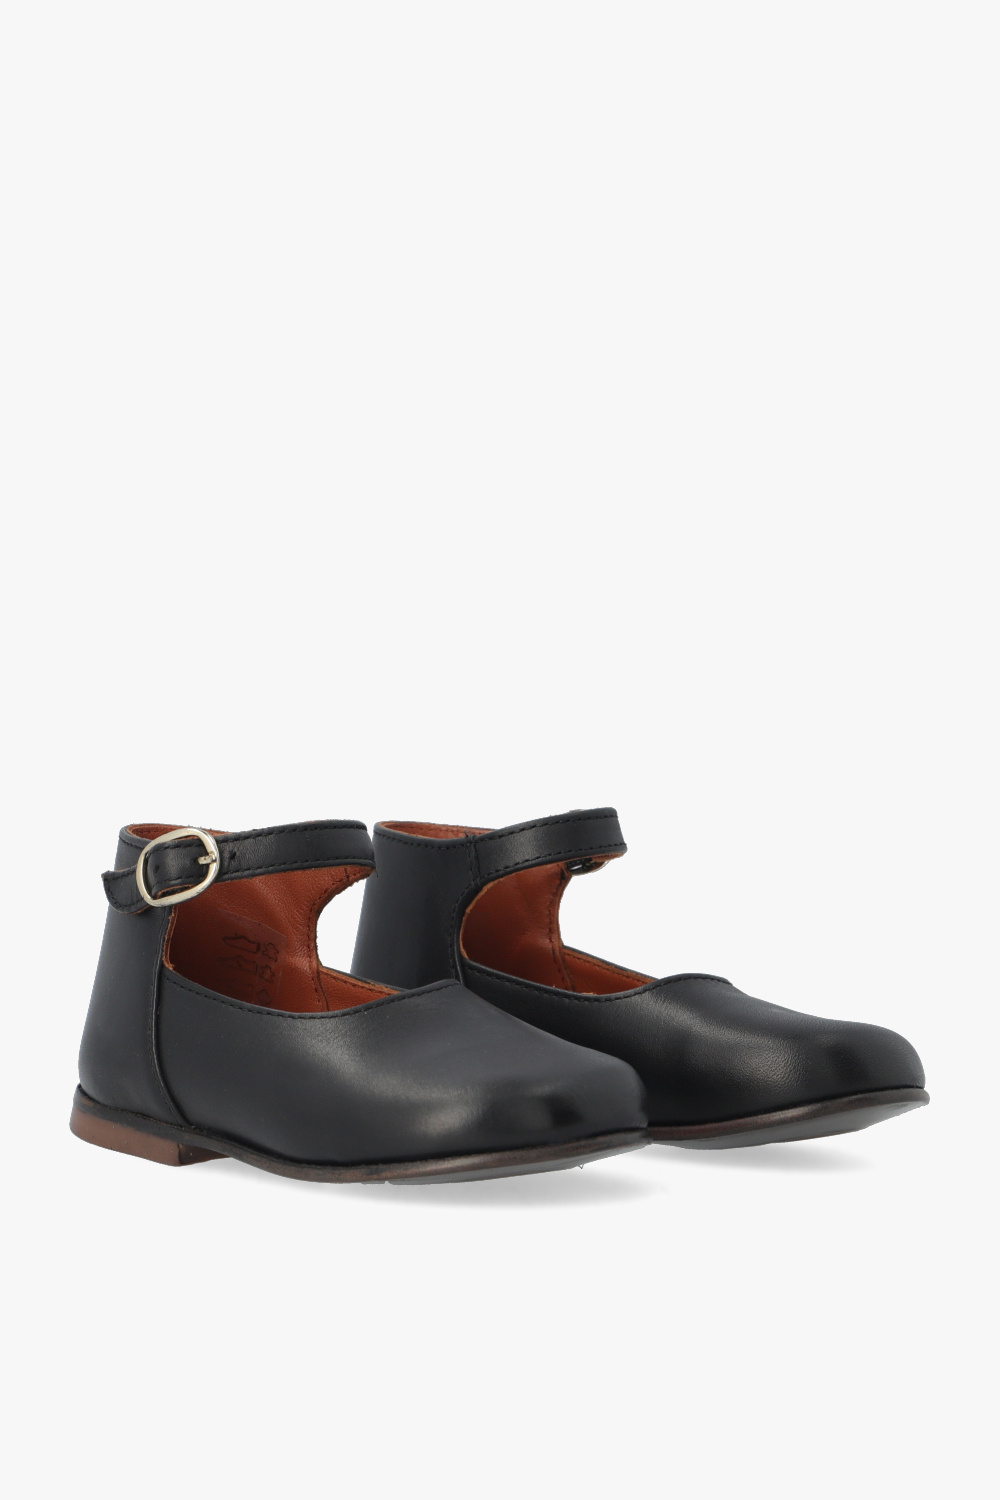 Bonpoint  ‘Bijou’ leather fastening shoes